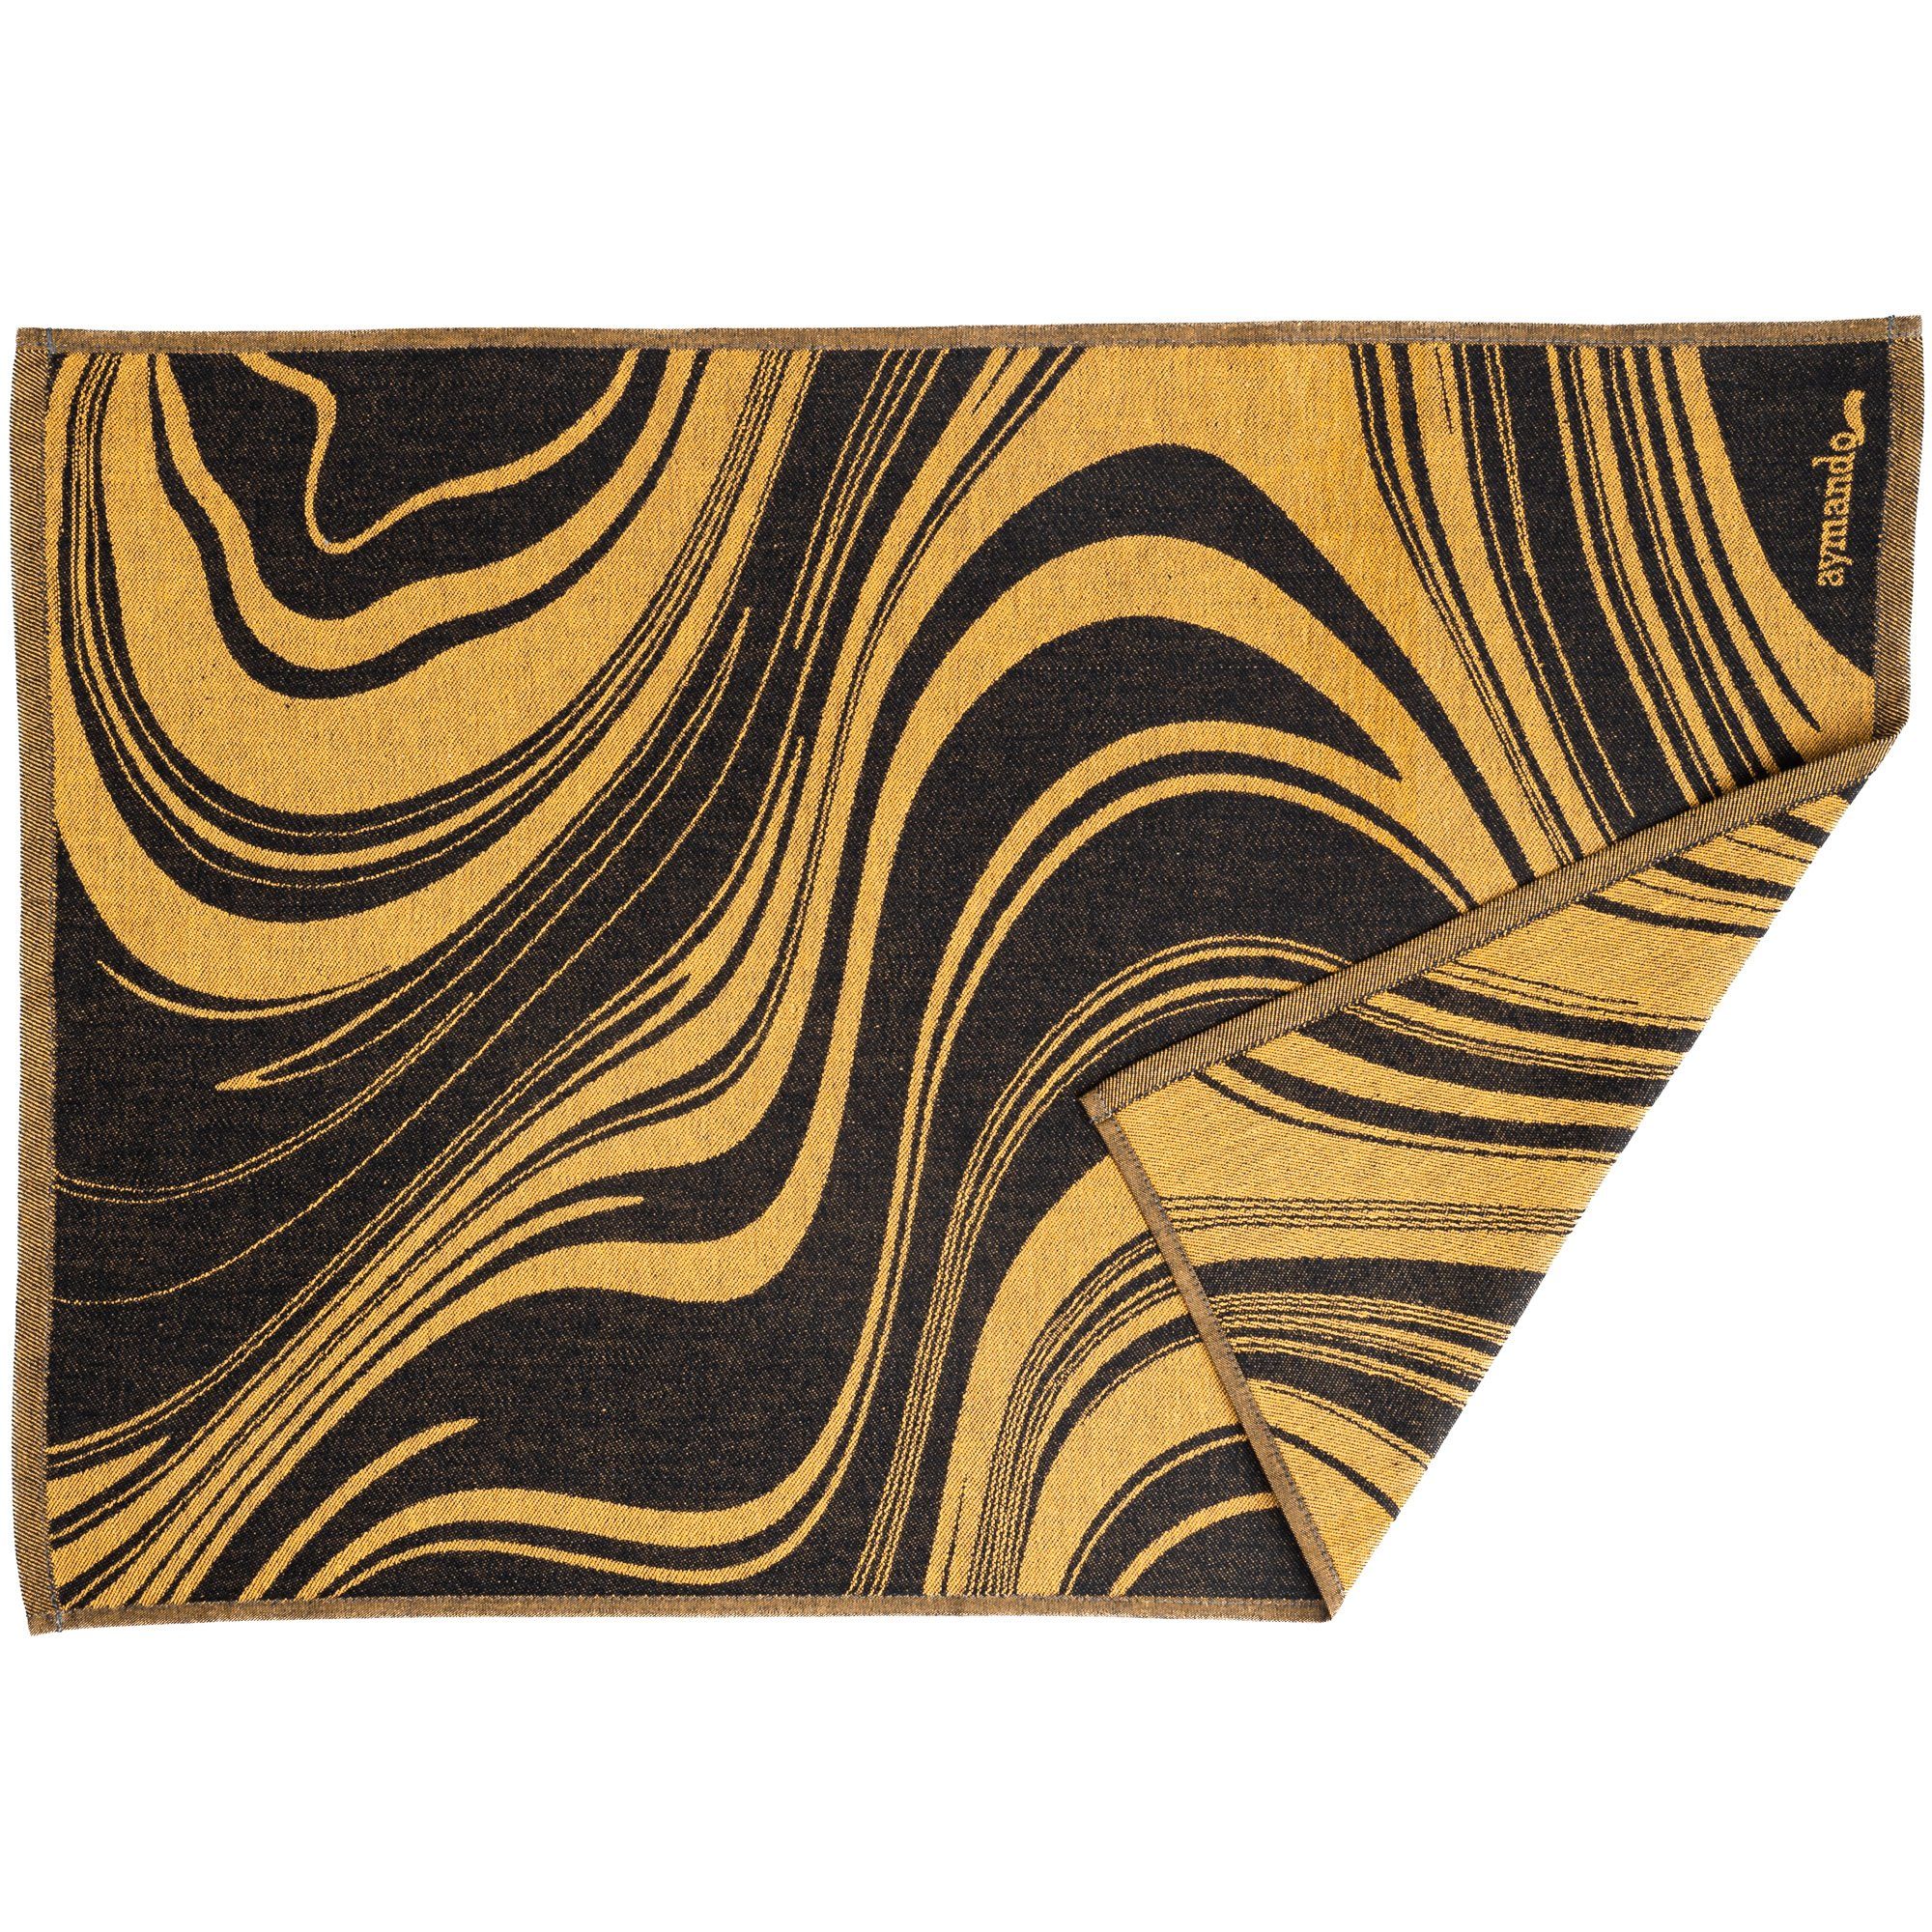 Curves, Black-Gold 3-tlg., (Set, Aymando Geschirrtuch 50x70 Baumwolle), cm Ägyptische